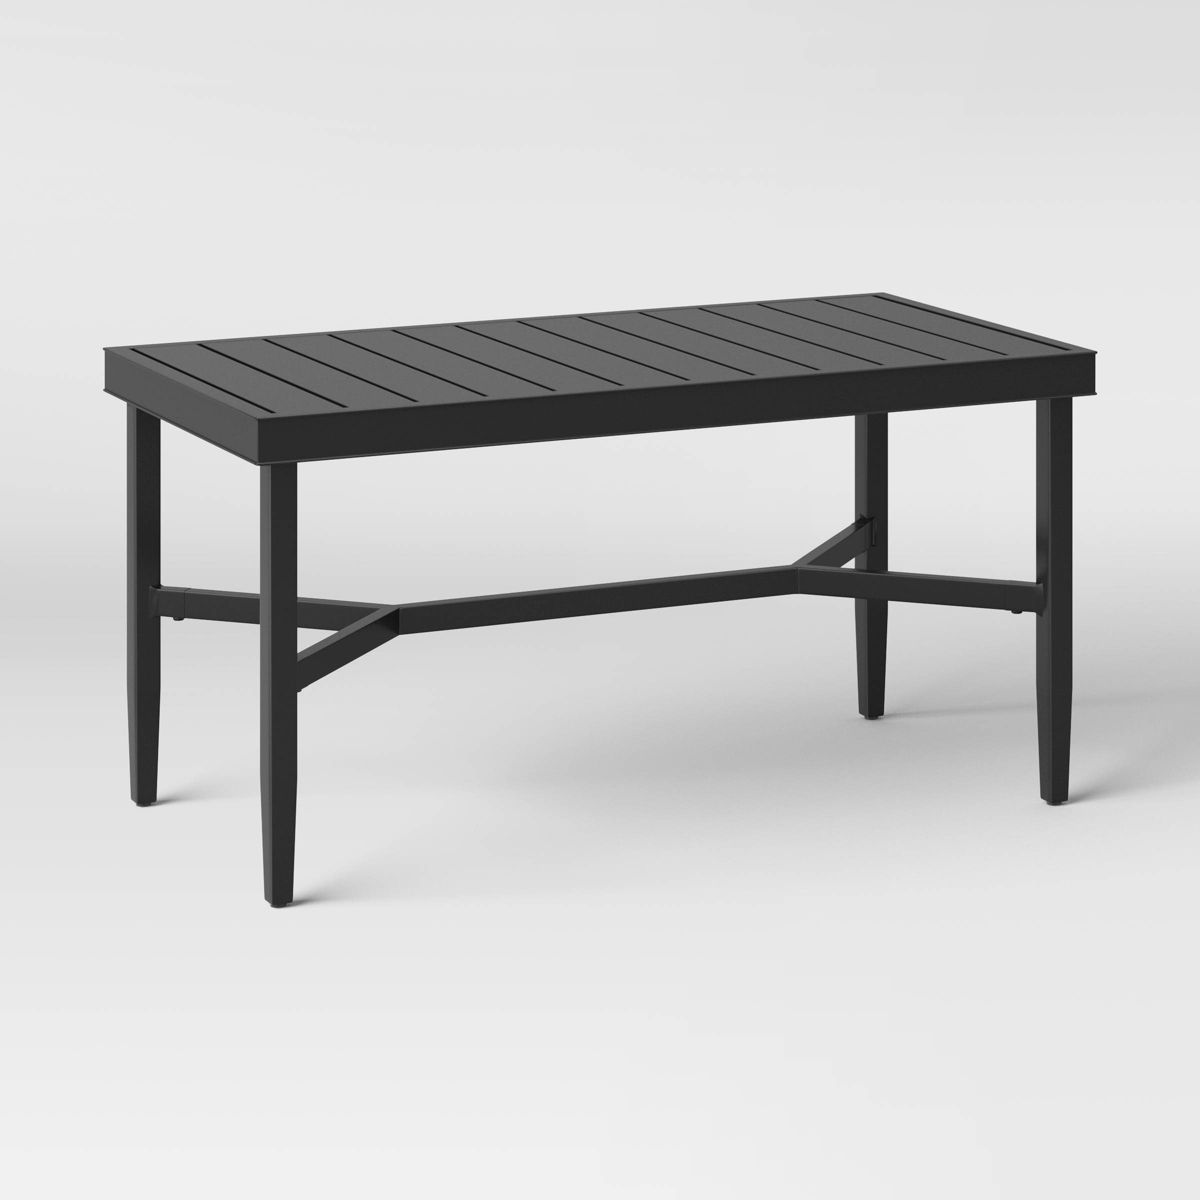 Searsburg Aluminum Slat Top Coffee Table - Black - Threshold™ | Target